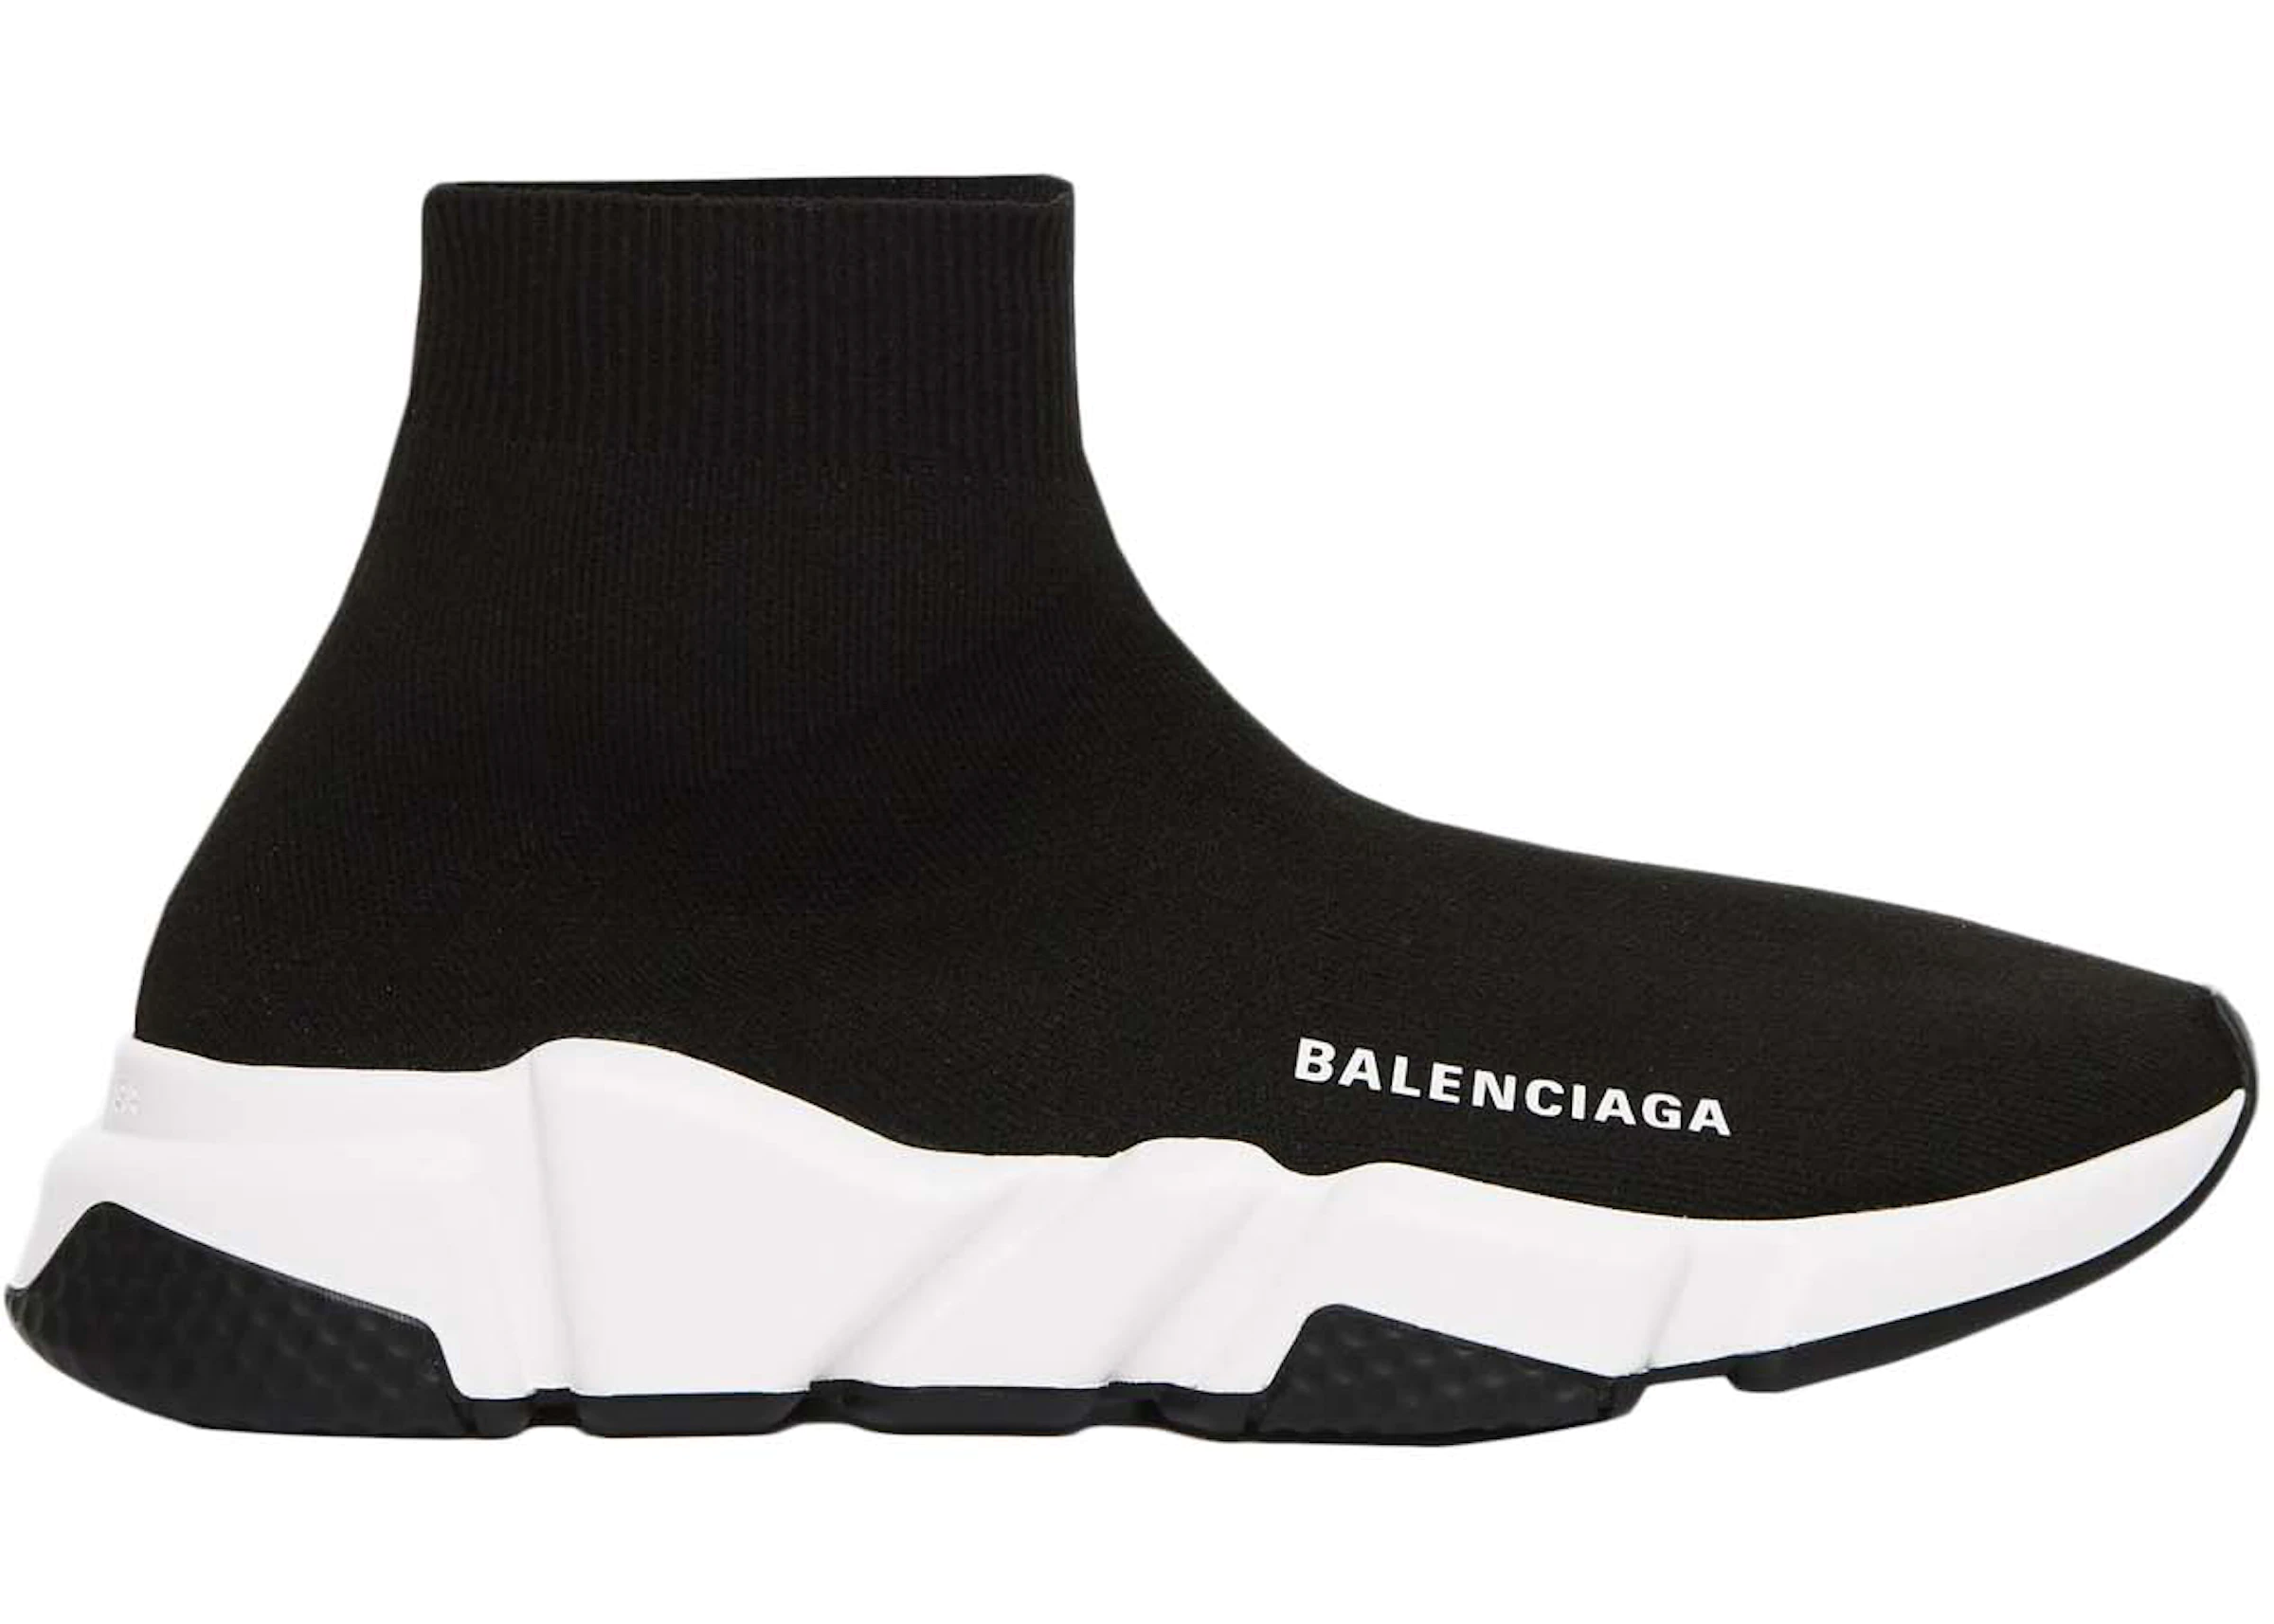 Balenciaga Nike Collab | lupon.gov.ph